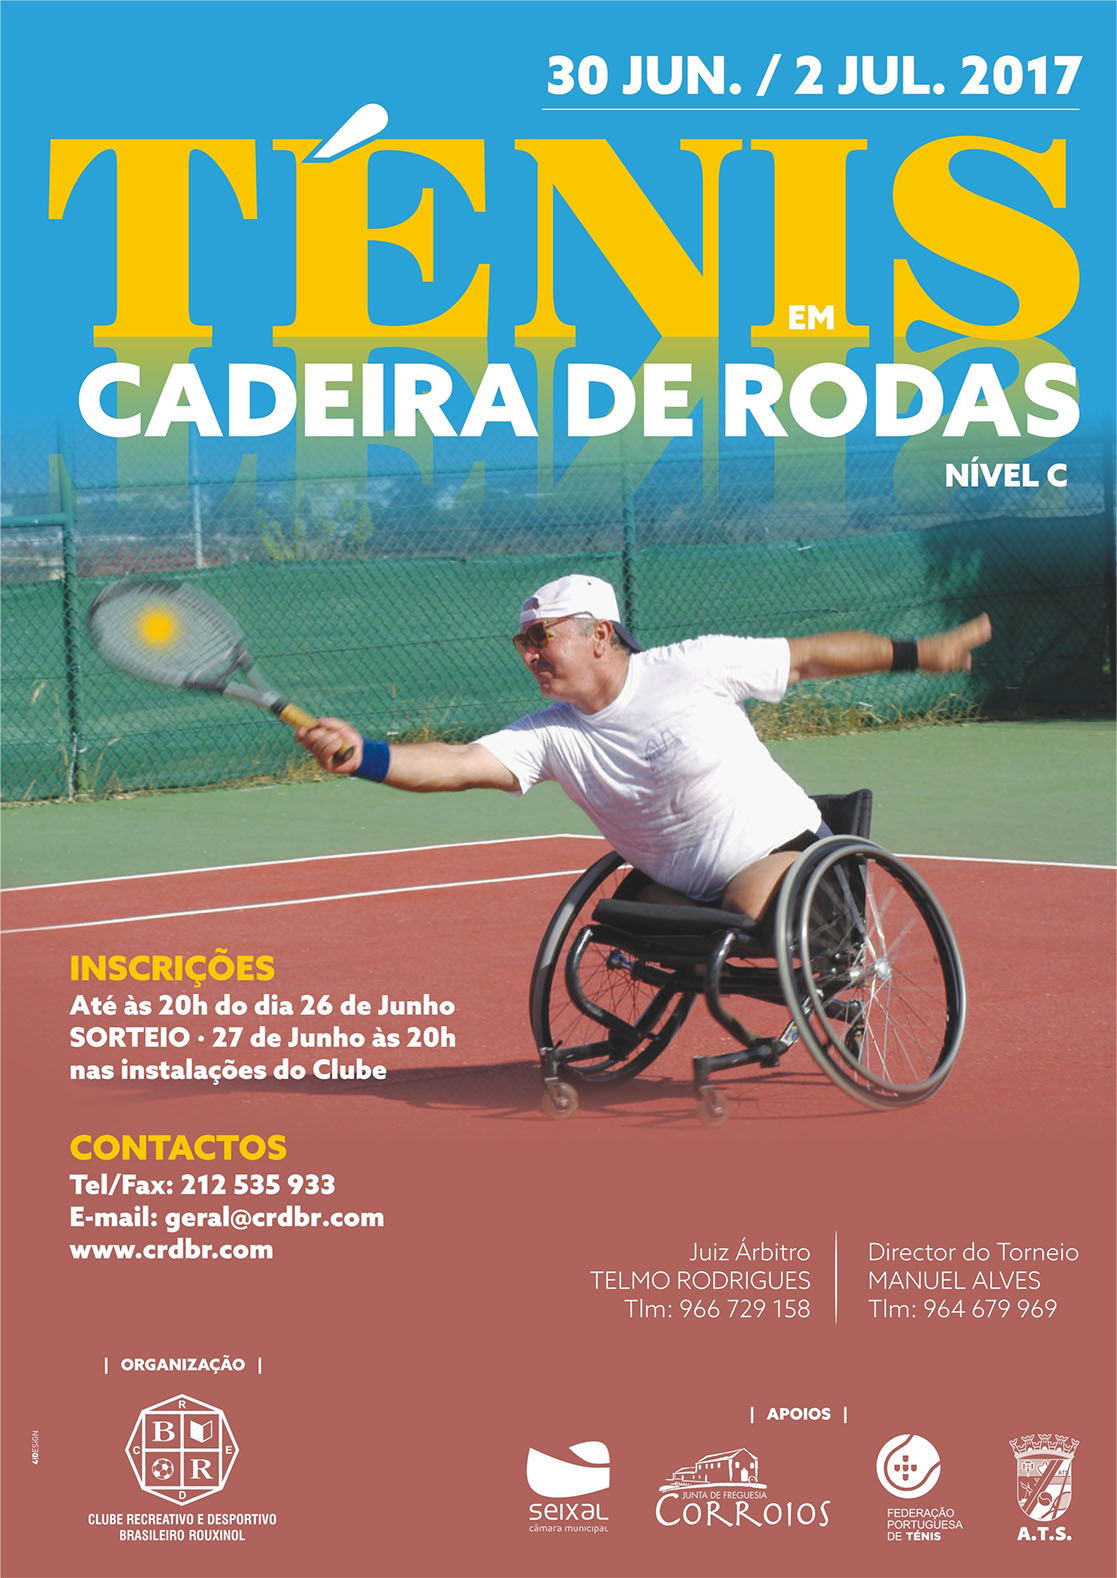 Torneios de Ténis  Clube Recreativo e Desportivo Brasileiro Rouxinol